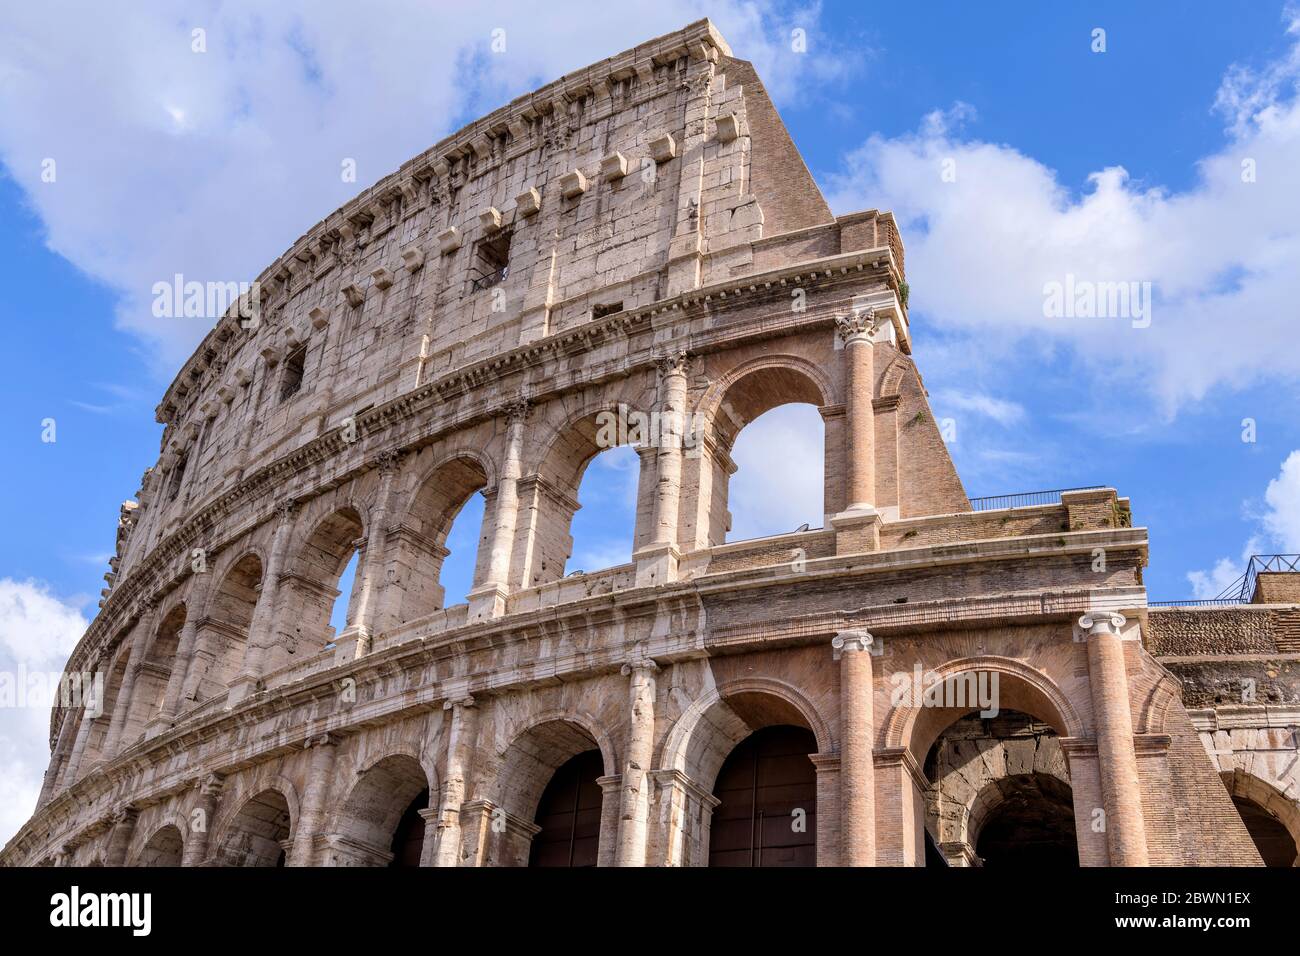 Wand des Kolosseums - Nahaufnahme des oberen Teils der westlichen Außenwand des Kolosseums, gegen weiße Wolken und blauen Himmel. Rom, Italien. Stockfoto